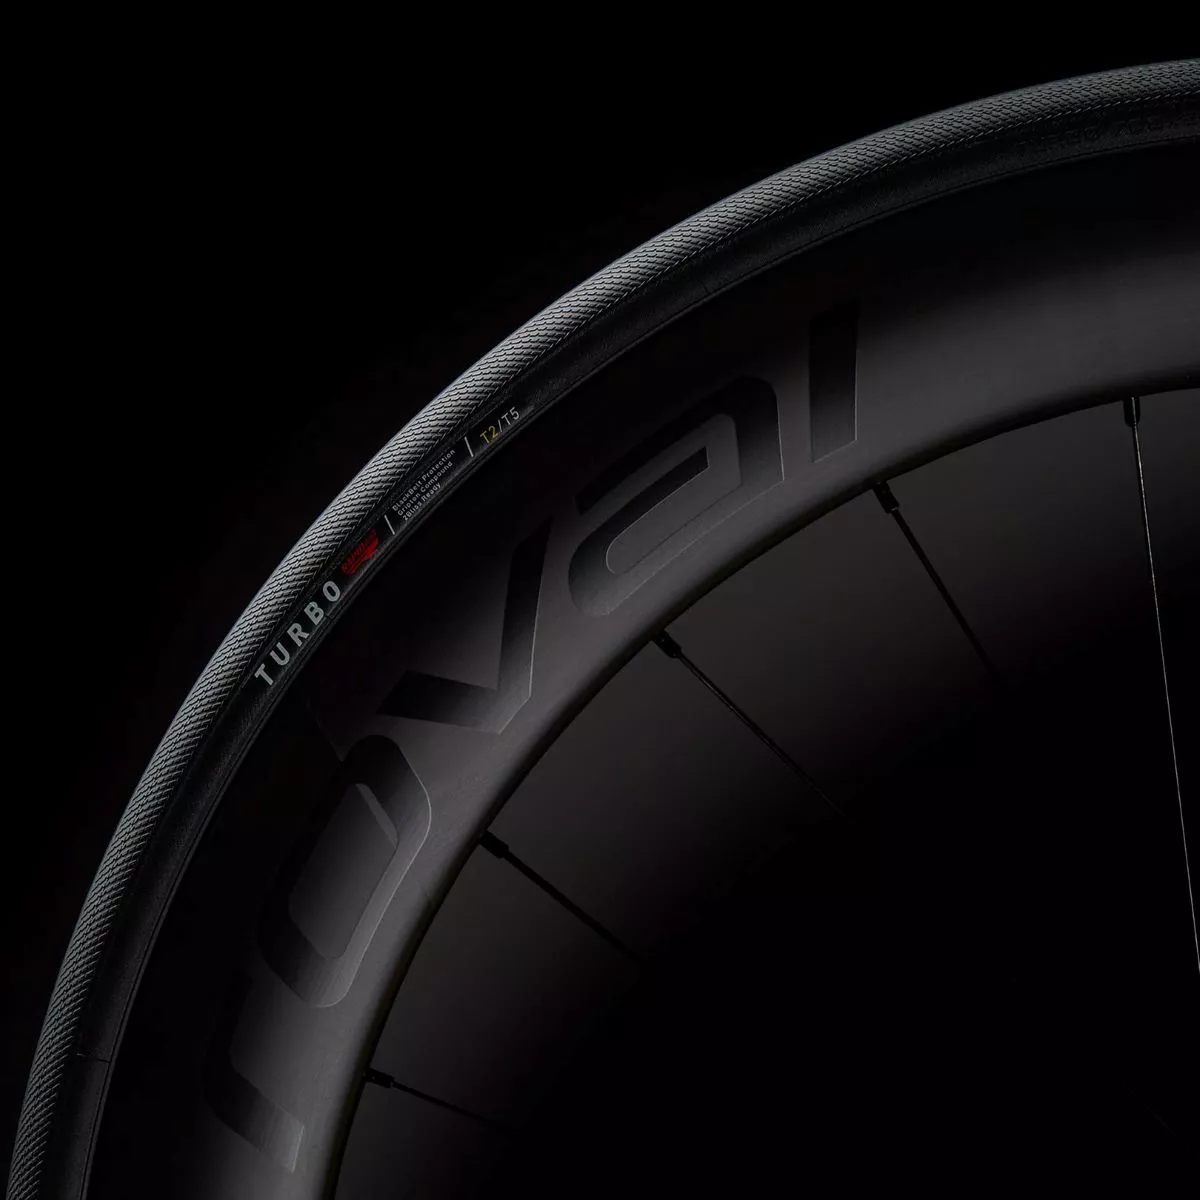 Specialized presenta la nueva familia de neumáticos S-Works Turbo, en versión tubeless y cámara